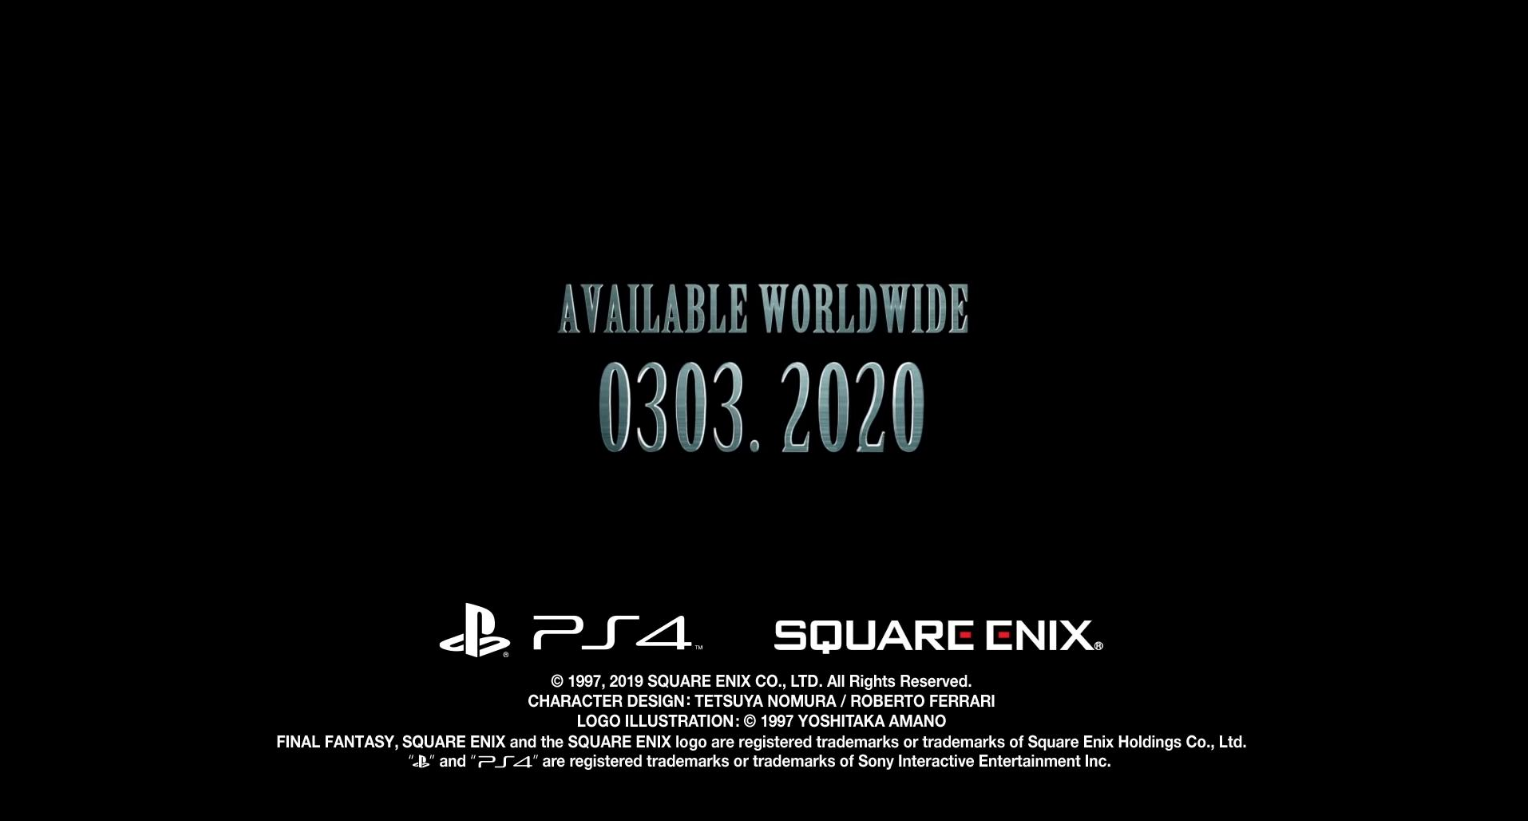 SE官方确认《最终幻想7：重制版》PS4独占 无登陆其他平台计划